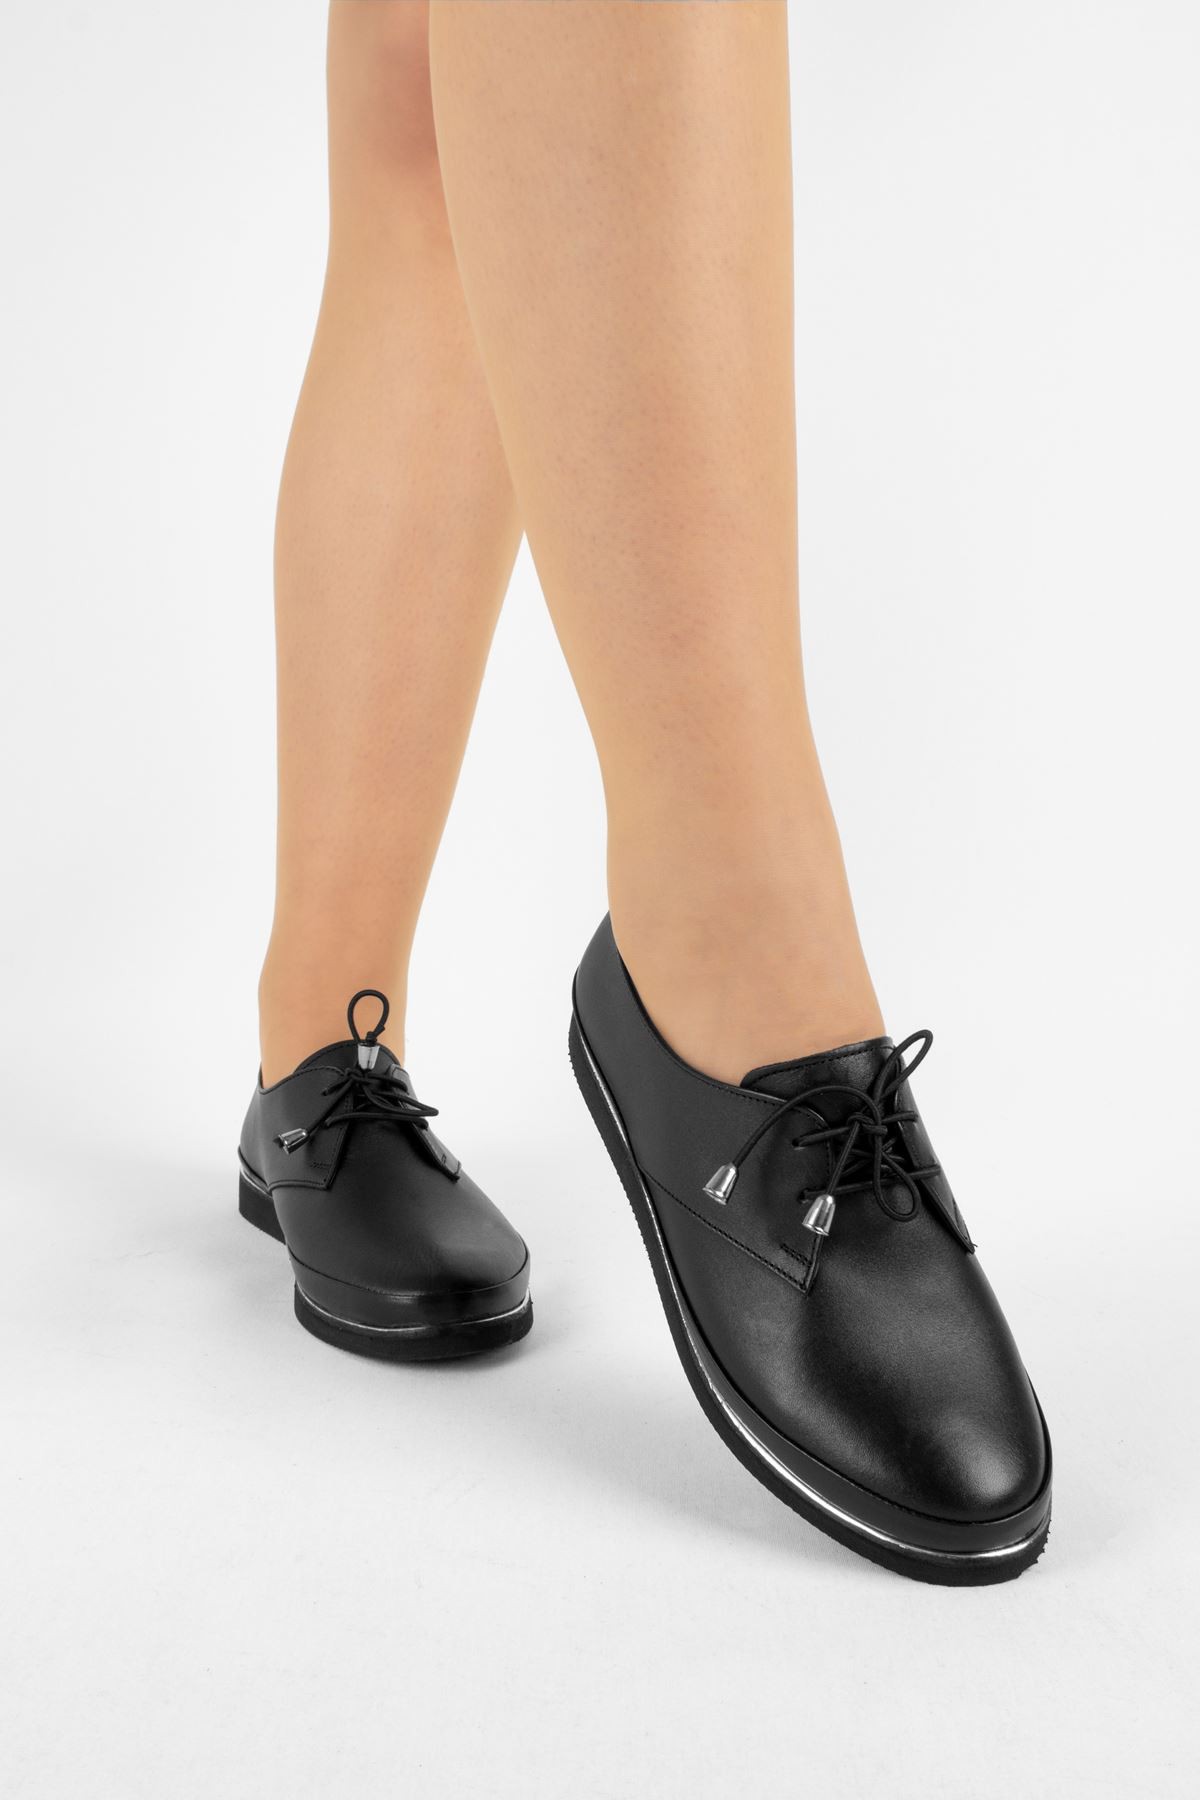 Neel Kadın Günlük Hakiki Deri Ayakkabı (B1806) - Siyah